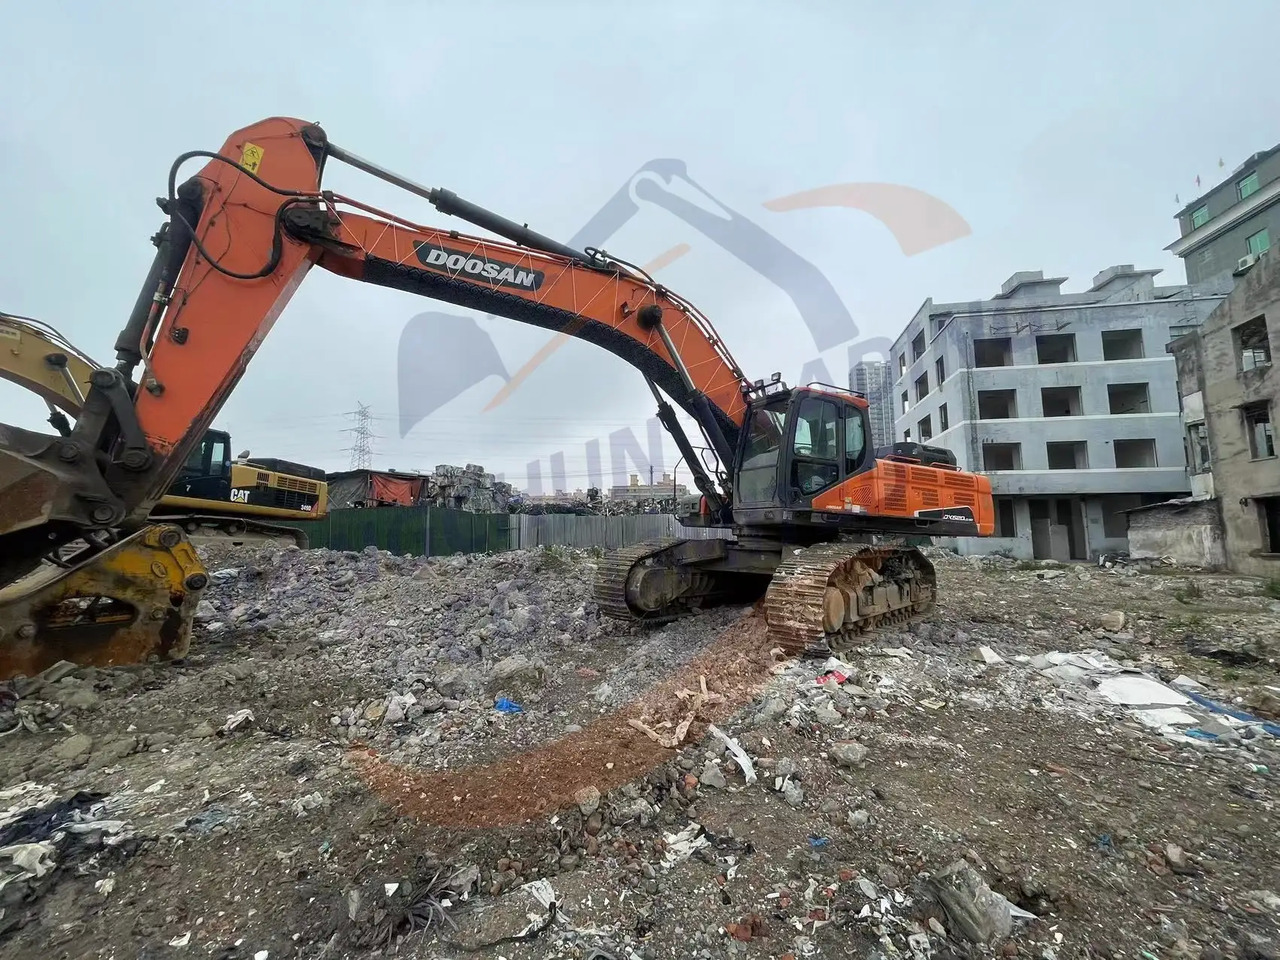 Beltegraver Low running hours Used Doosan excavator DX520LC-9C in good condition for sale: bilde 5